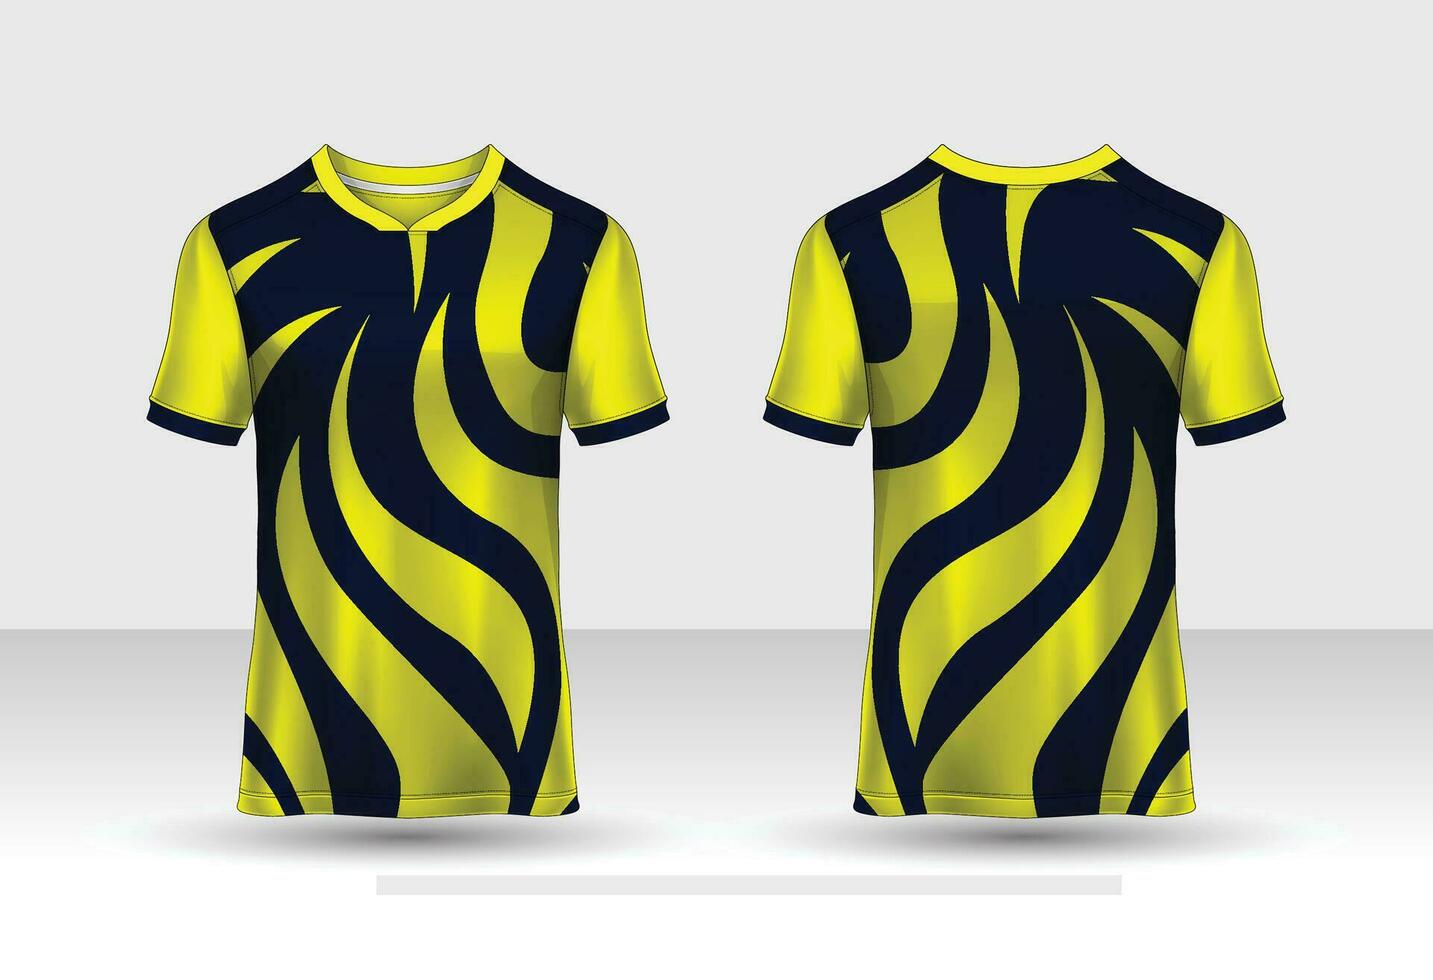 camisa esportiva e modelo de t-shirt vetor de design de camisa esportiva. design esportivo para futebol, corrida, camisa de jogos. vetor.